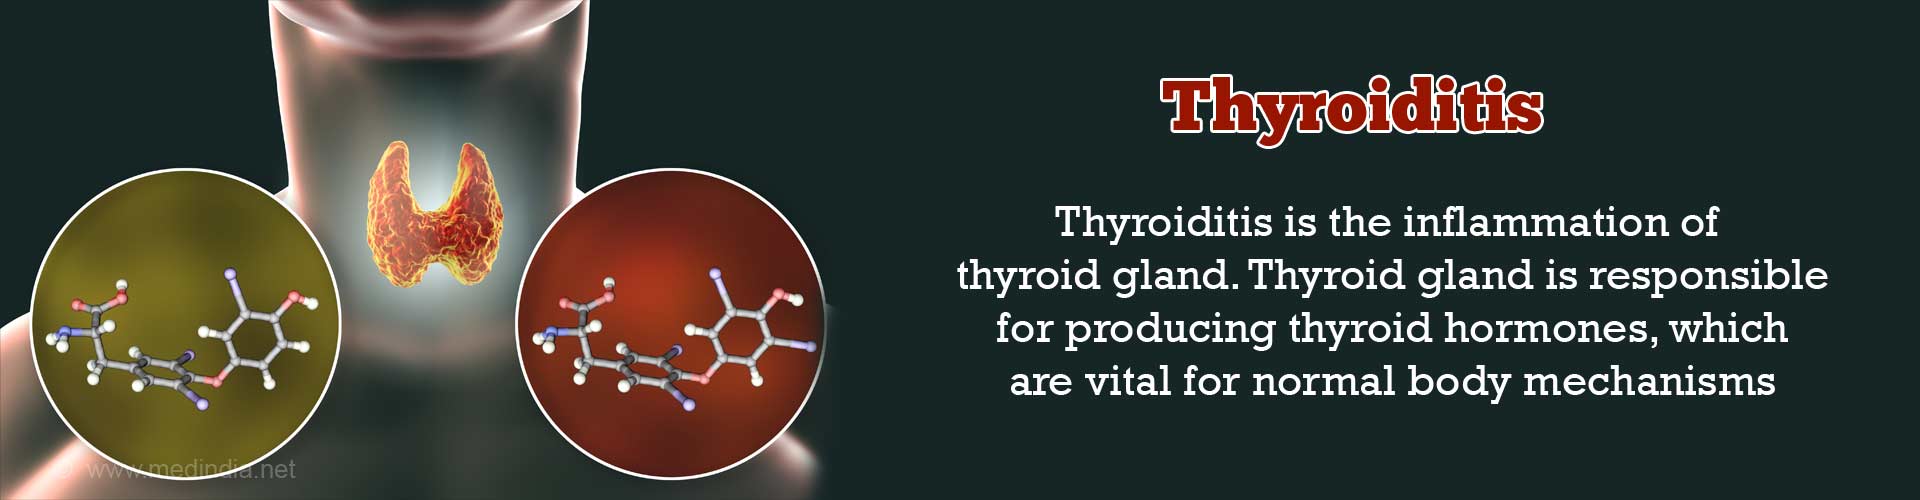 chronic thyroiditis